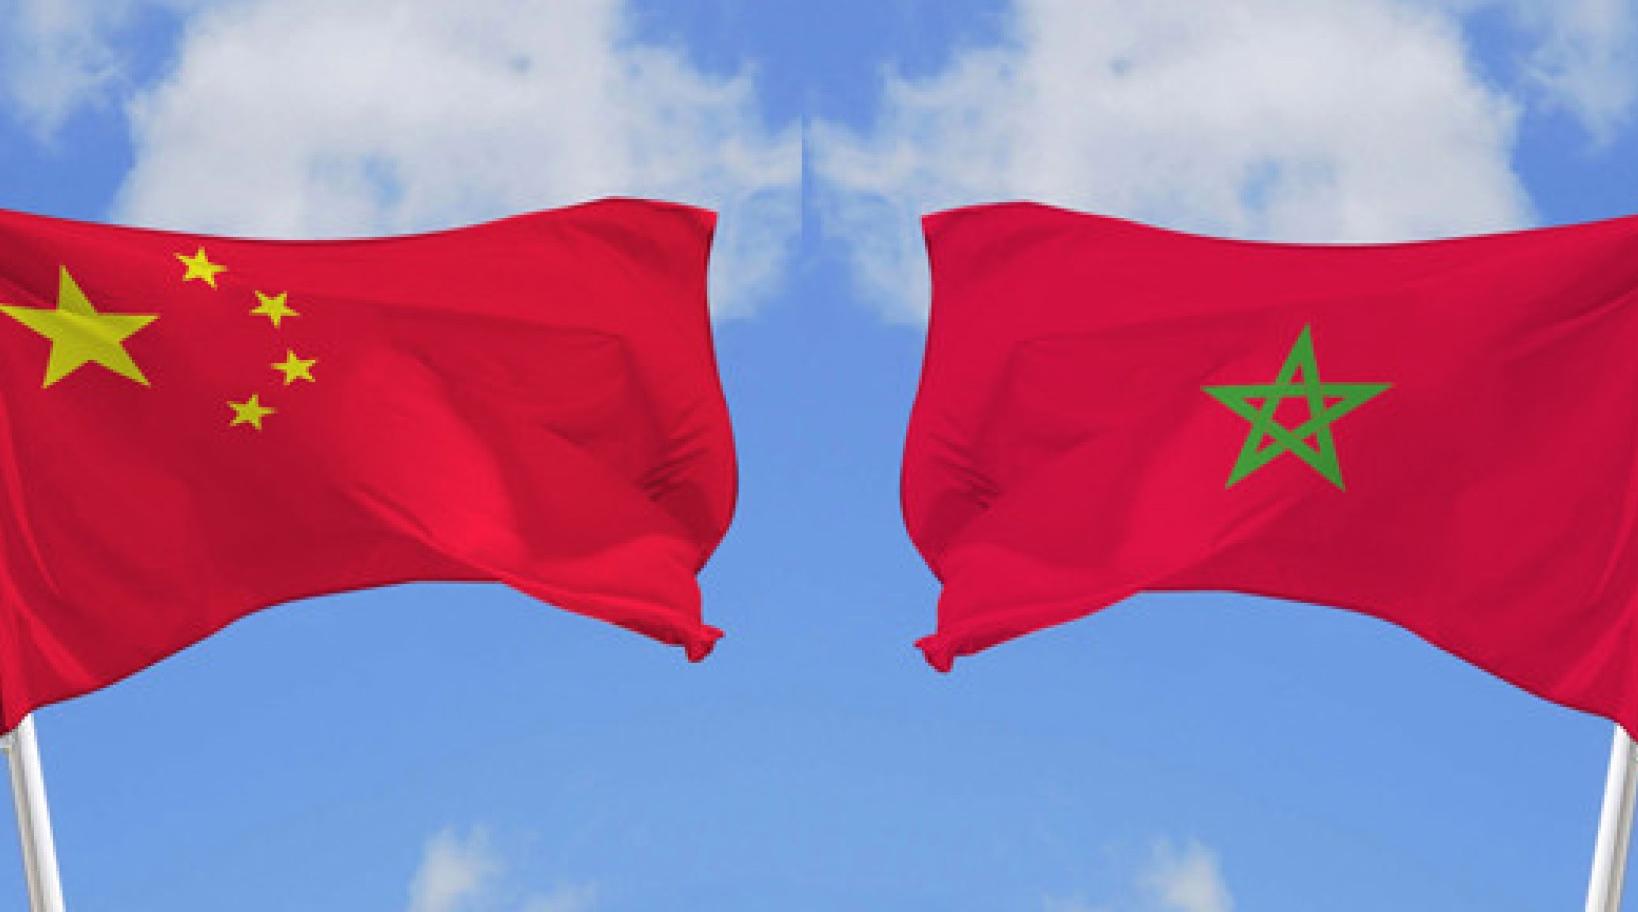 Le Maroc et la Chine partagent la même vision stratégique Sud-Sud